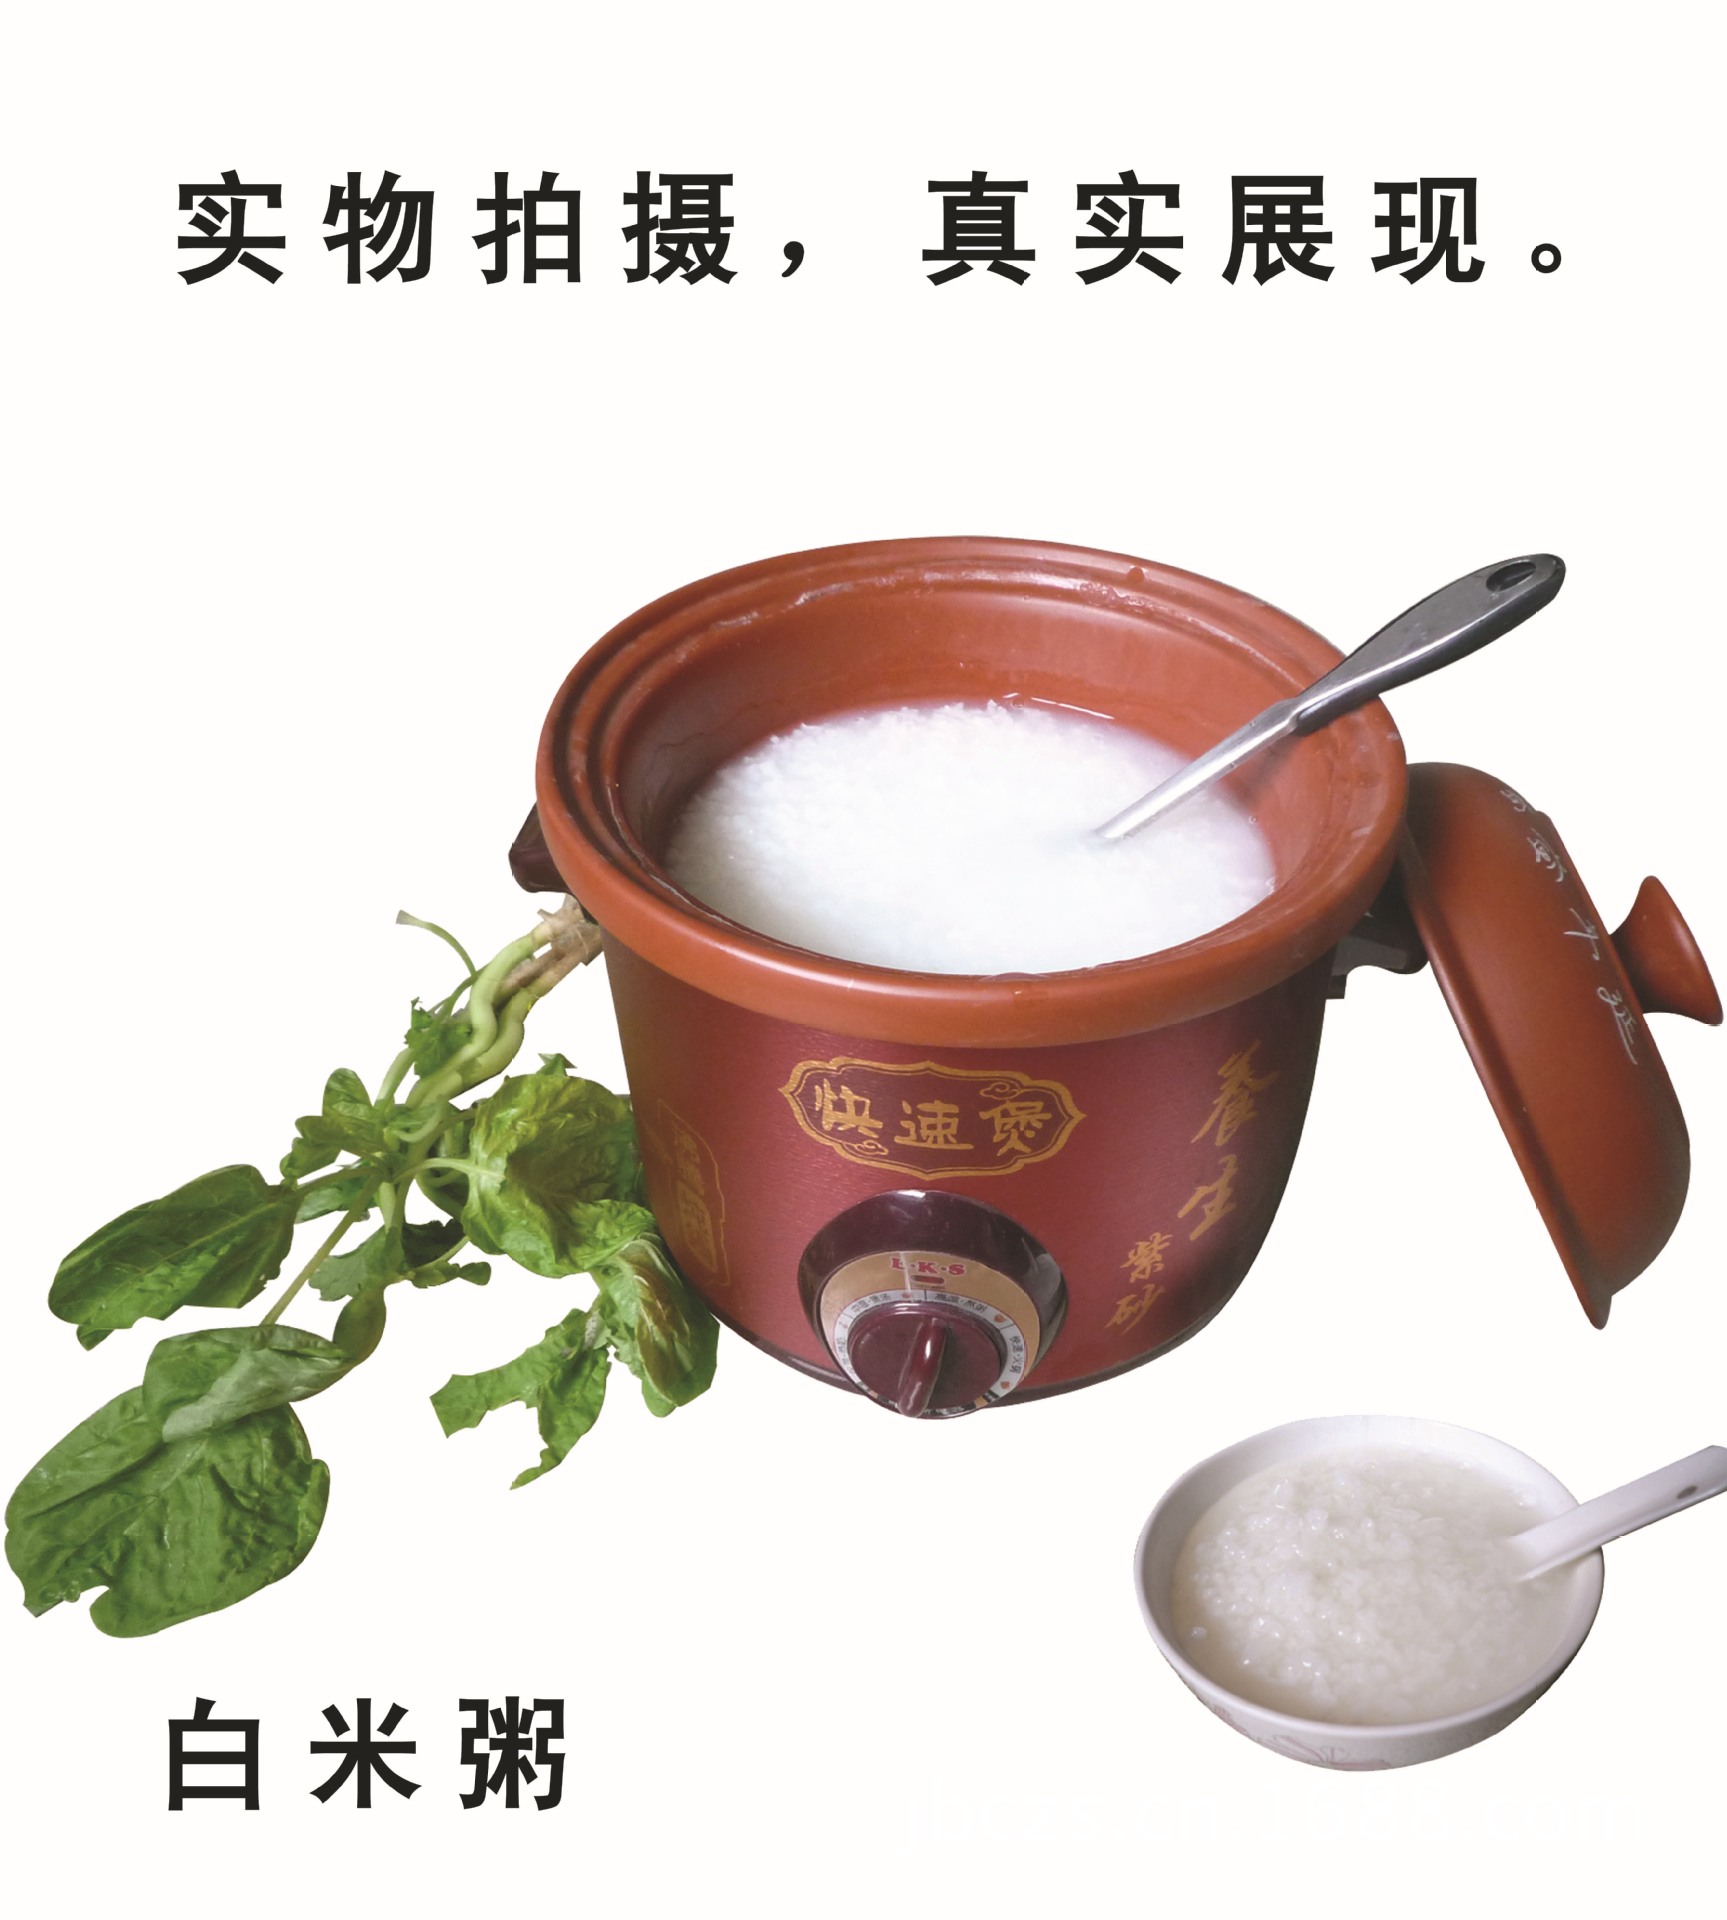 8.白米粥